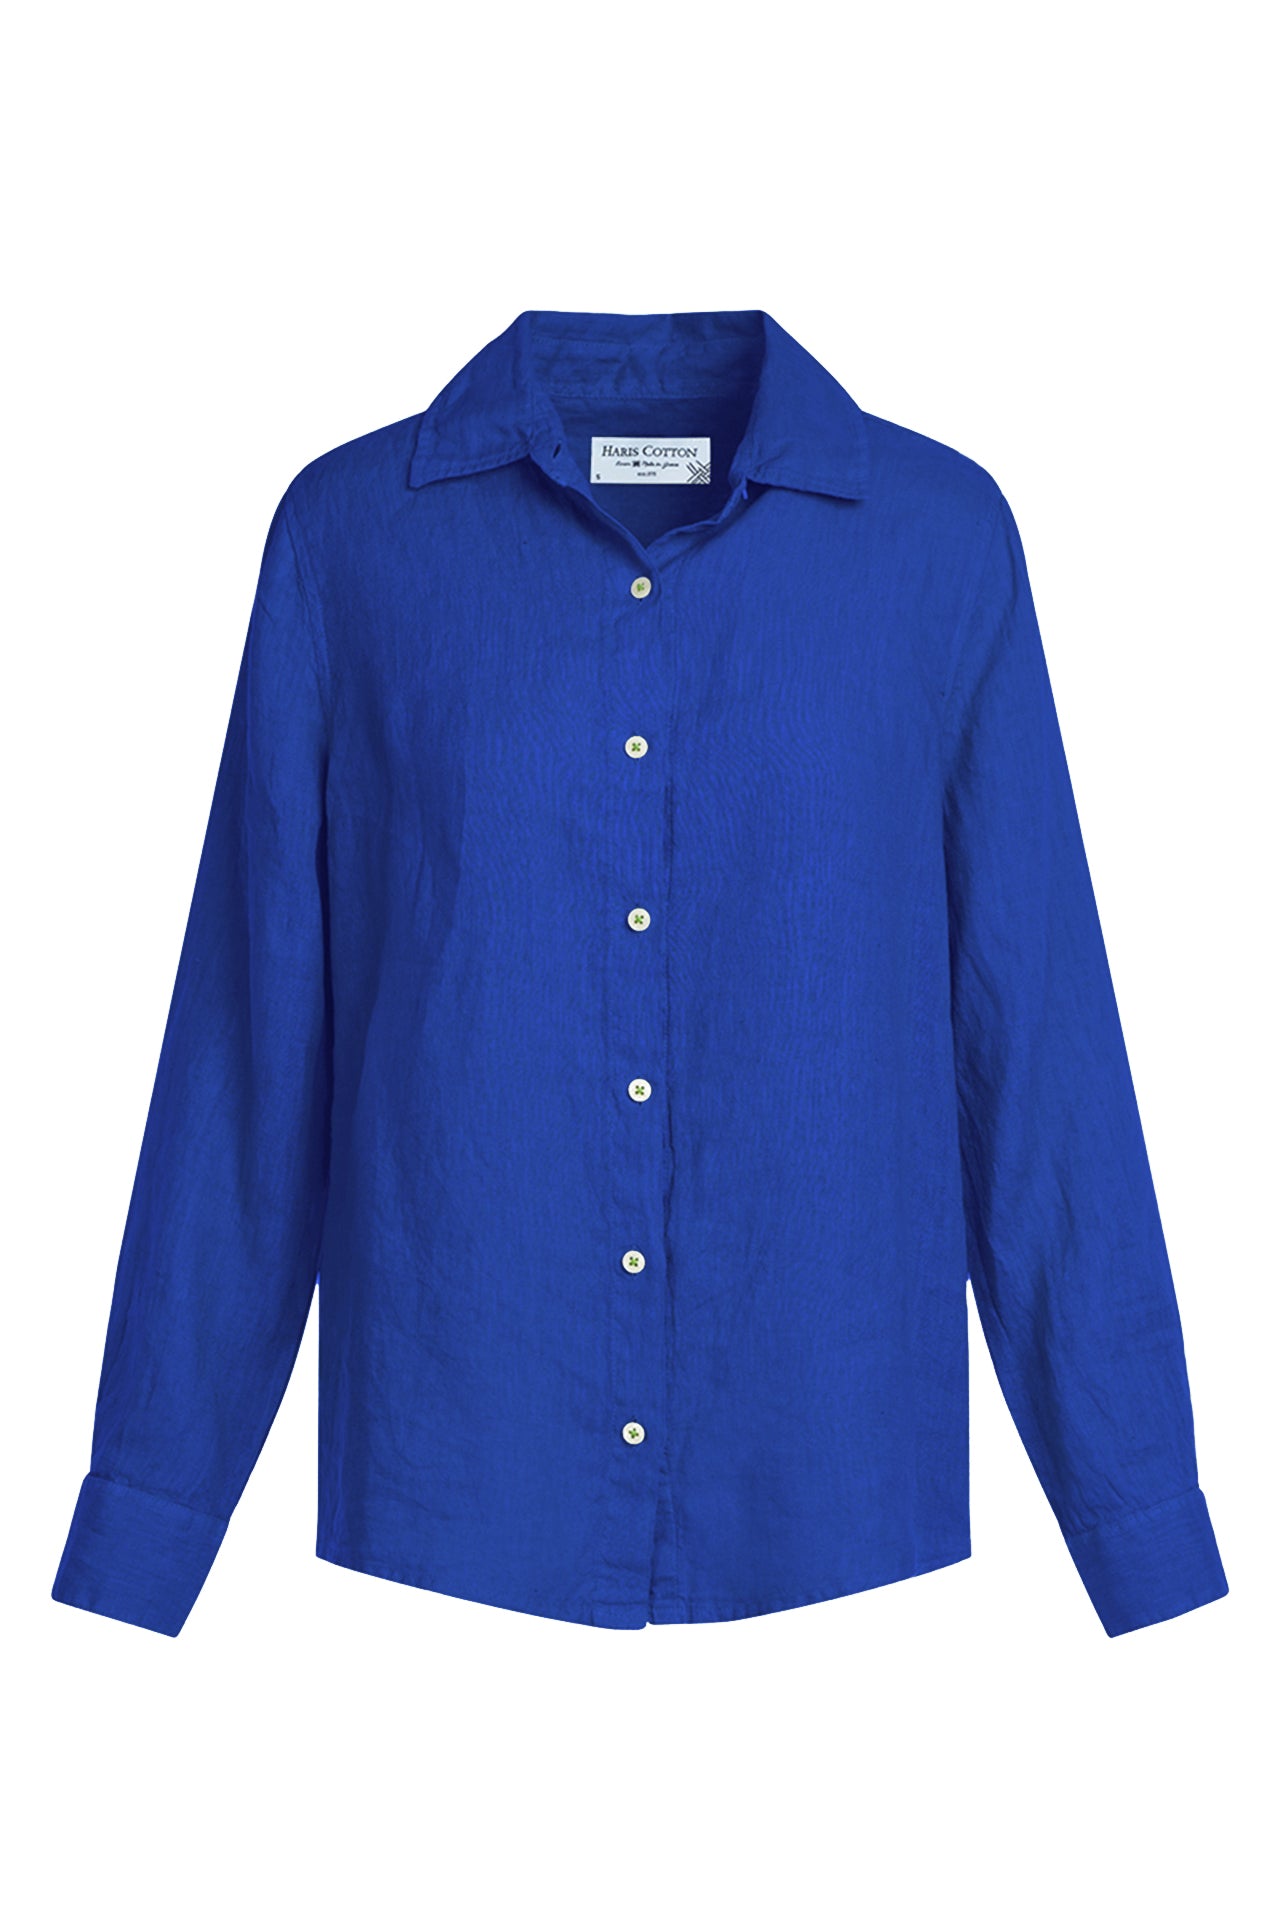 Camisa Zante Azul Lapis